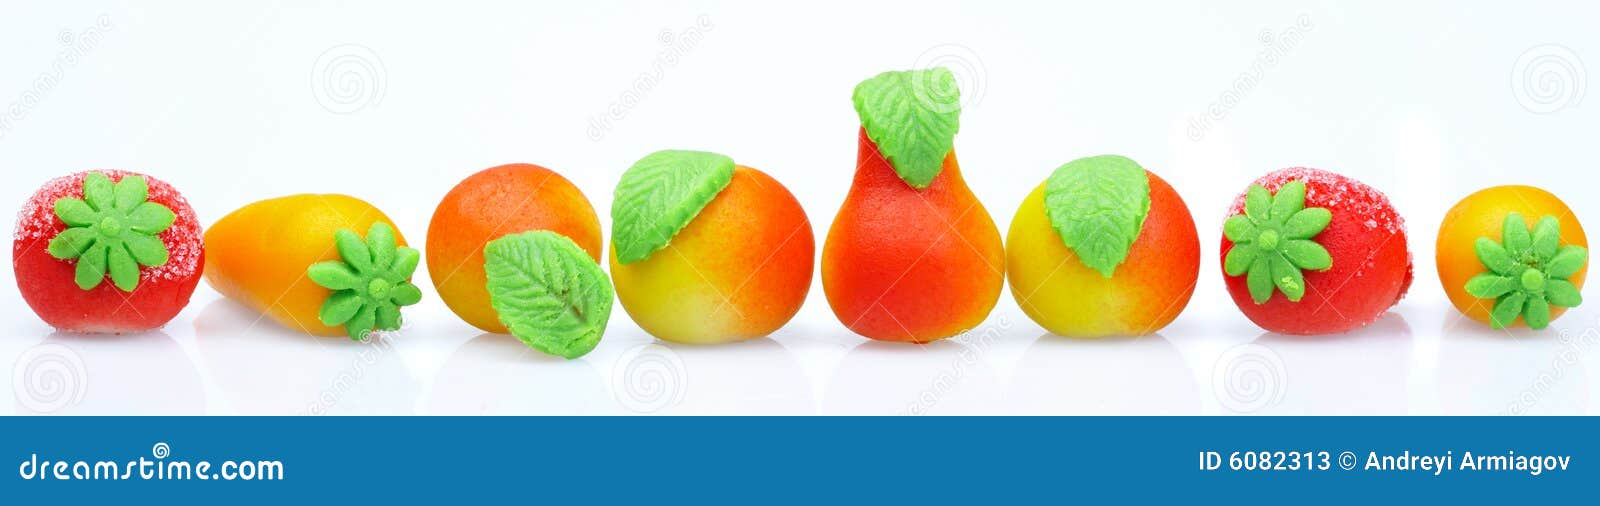 Proberen gevechten Vaderlijk De Marsepein Van Snoepjes. in De Vorm Van Fruit Stock Afbeelding - Image of  marsepein, zoetheid: 6082313